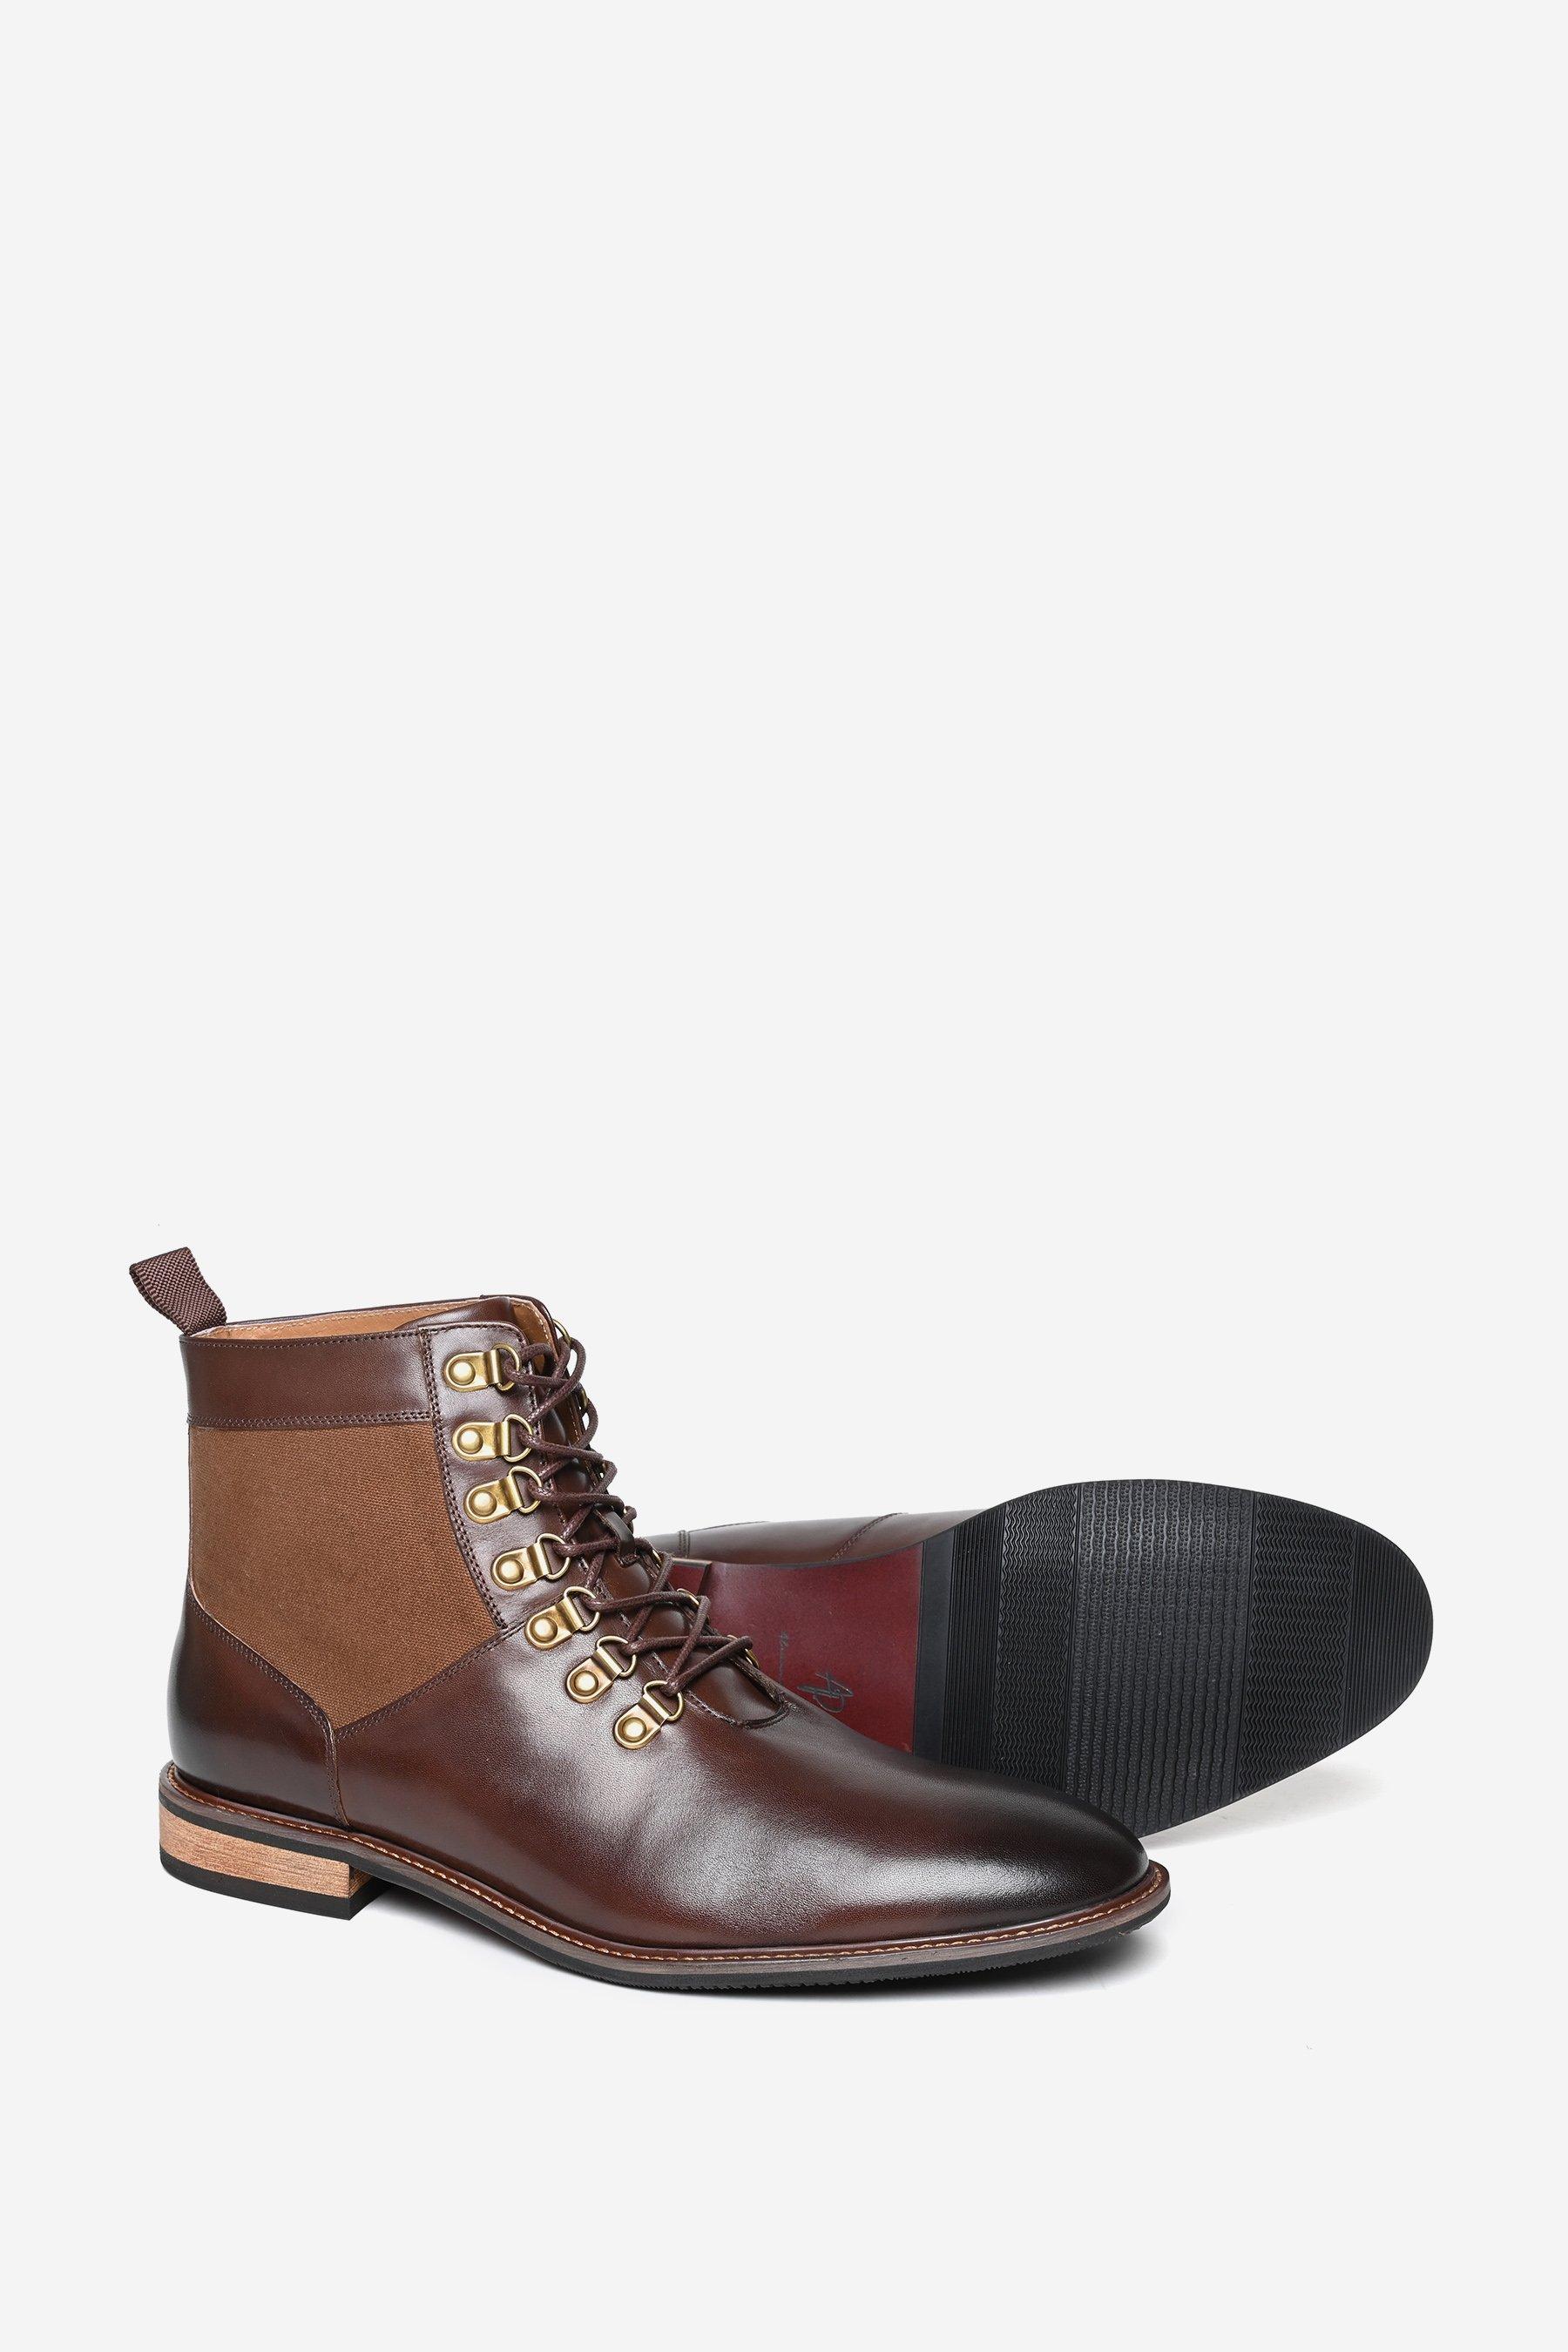 Кожаные ботинки дерби премиум-класса 'Brushwood' Alexander Pace, коричневый